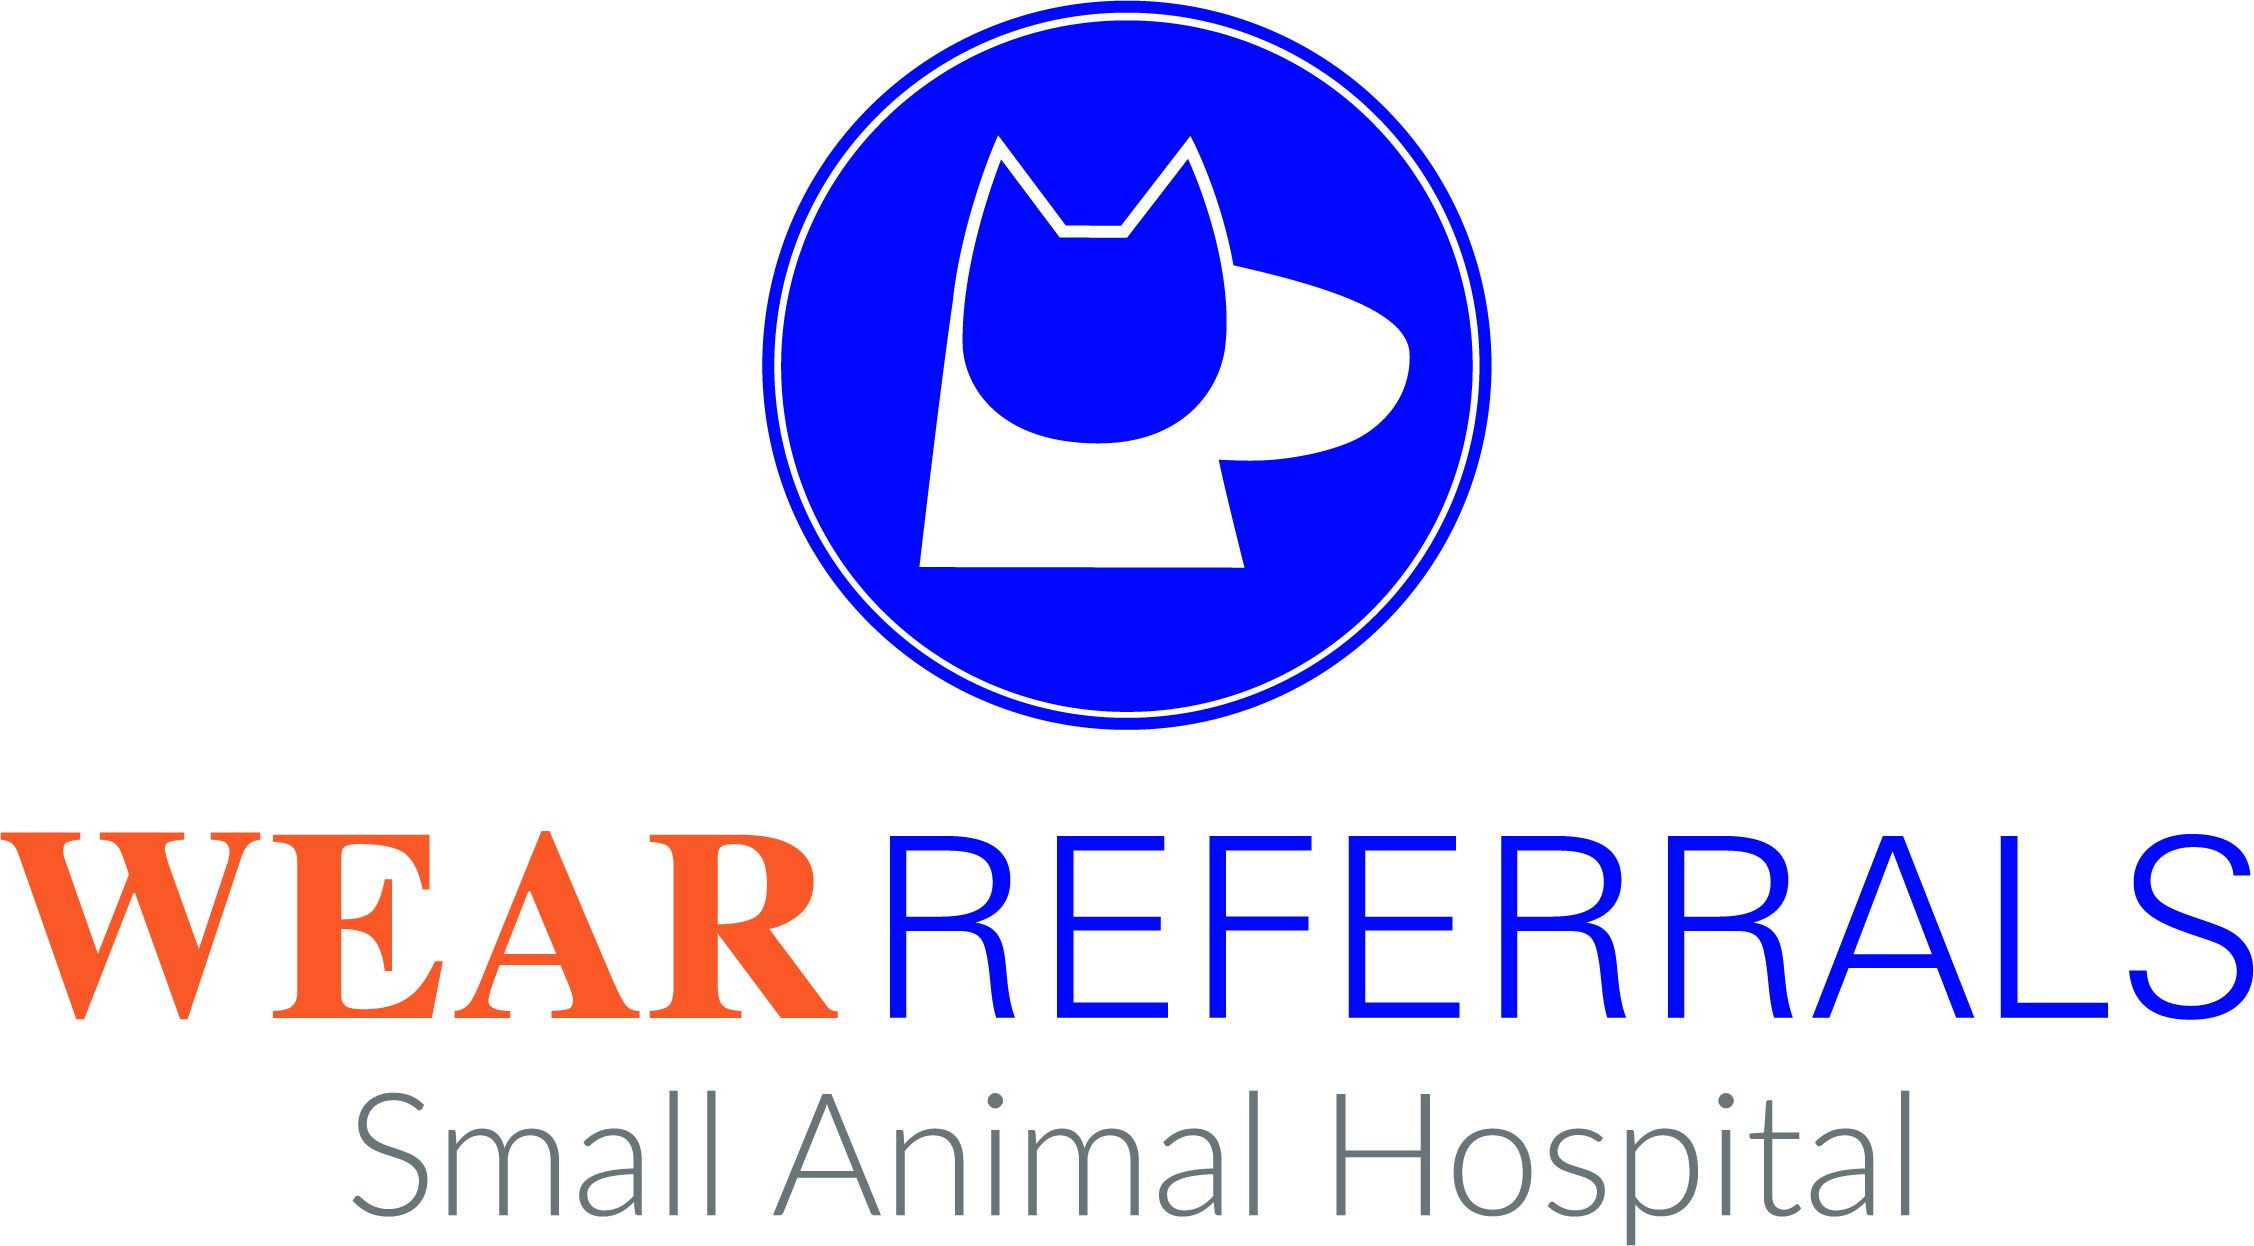 Wear Referrals Small Animal Hospital Logo